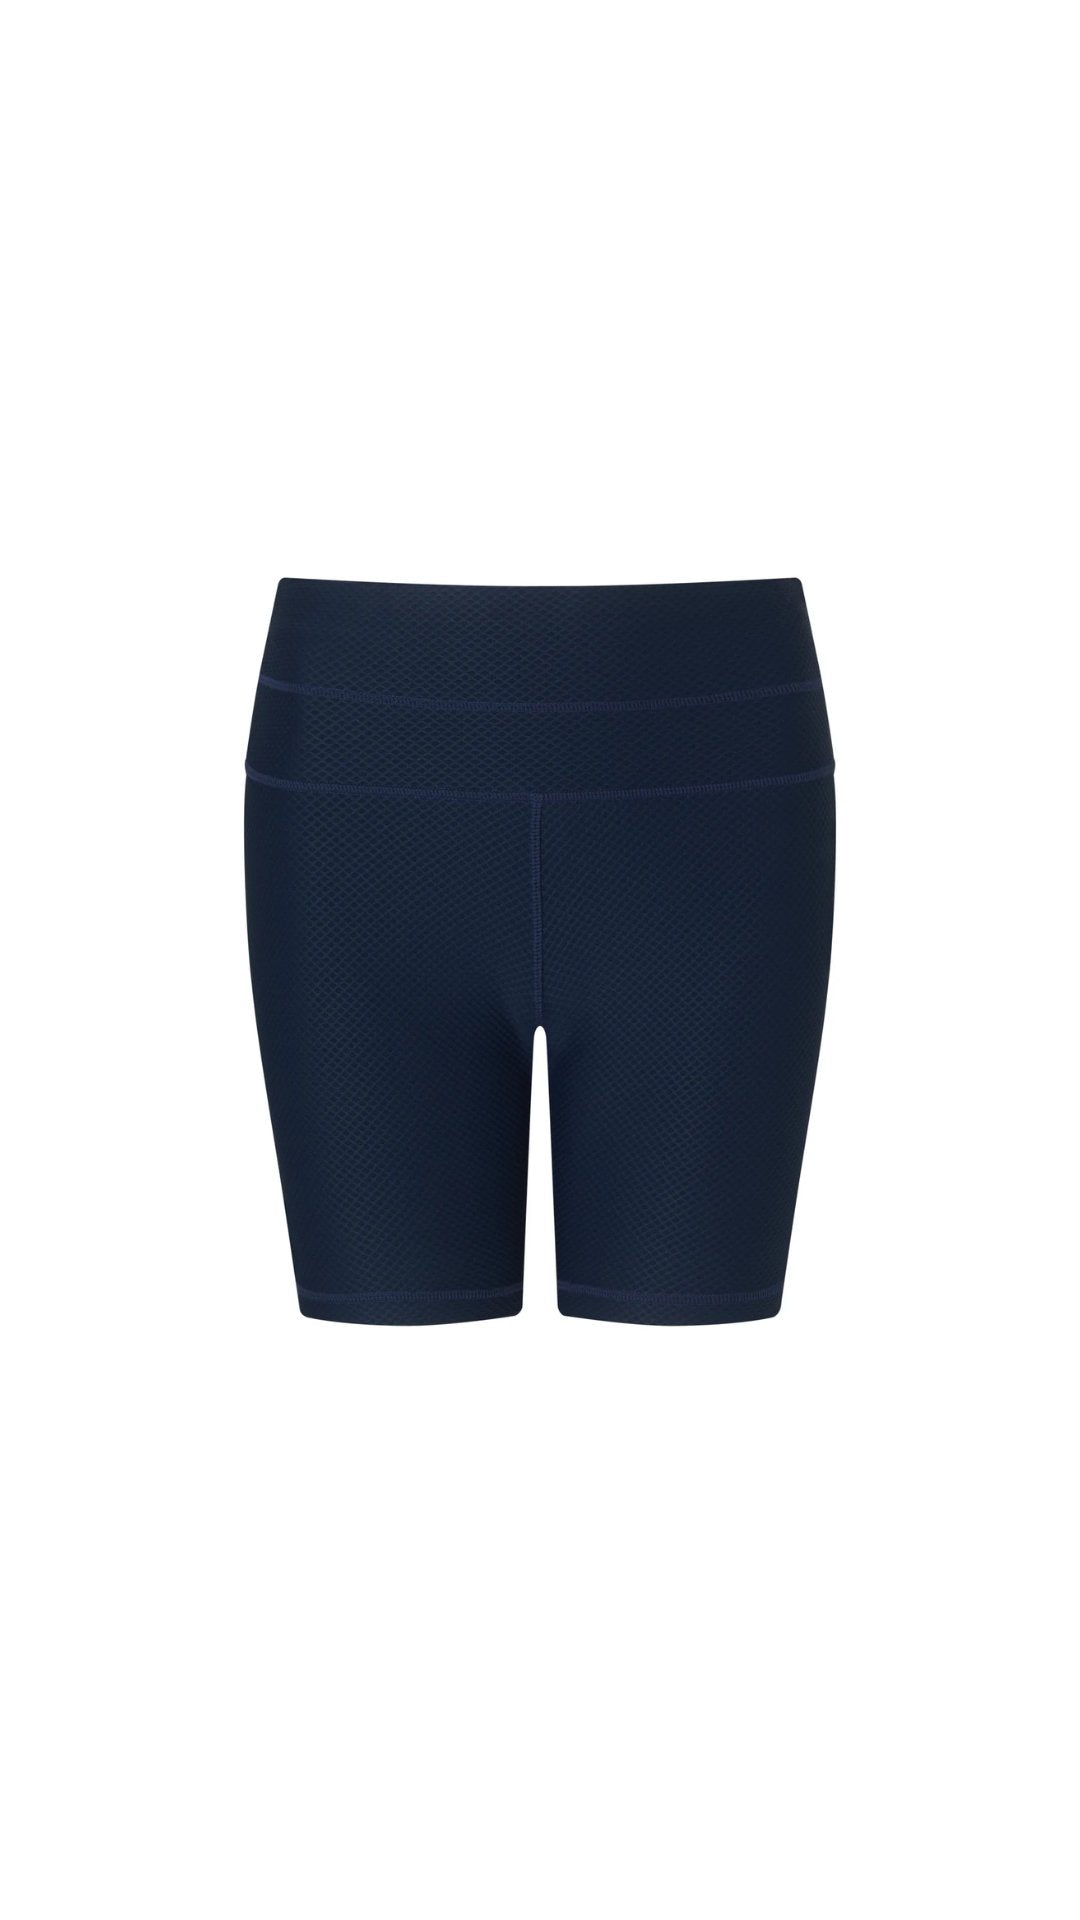 Orient Biker Shorts in Navy Blue - Heidi Klein - UK Store